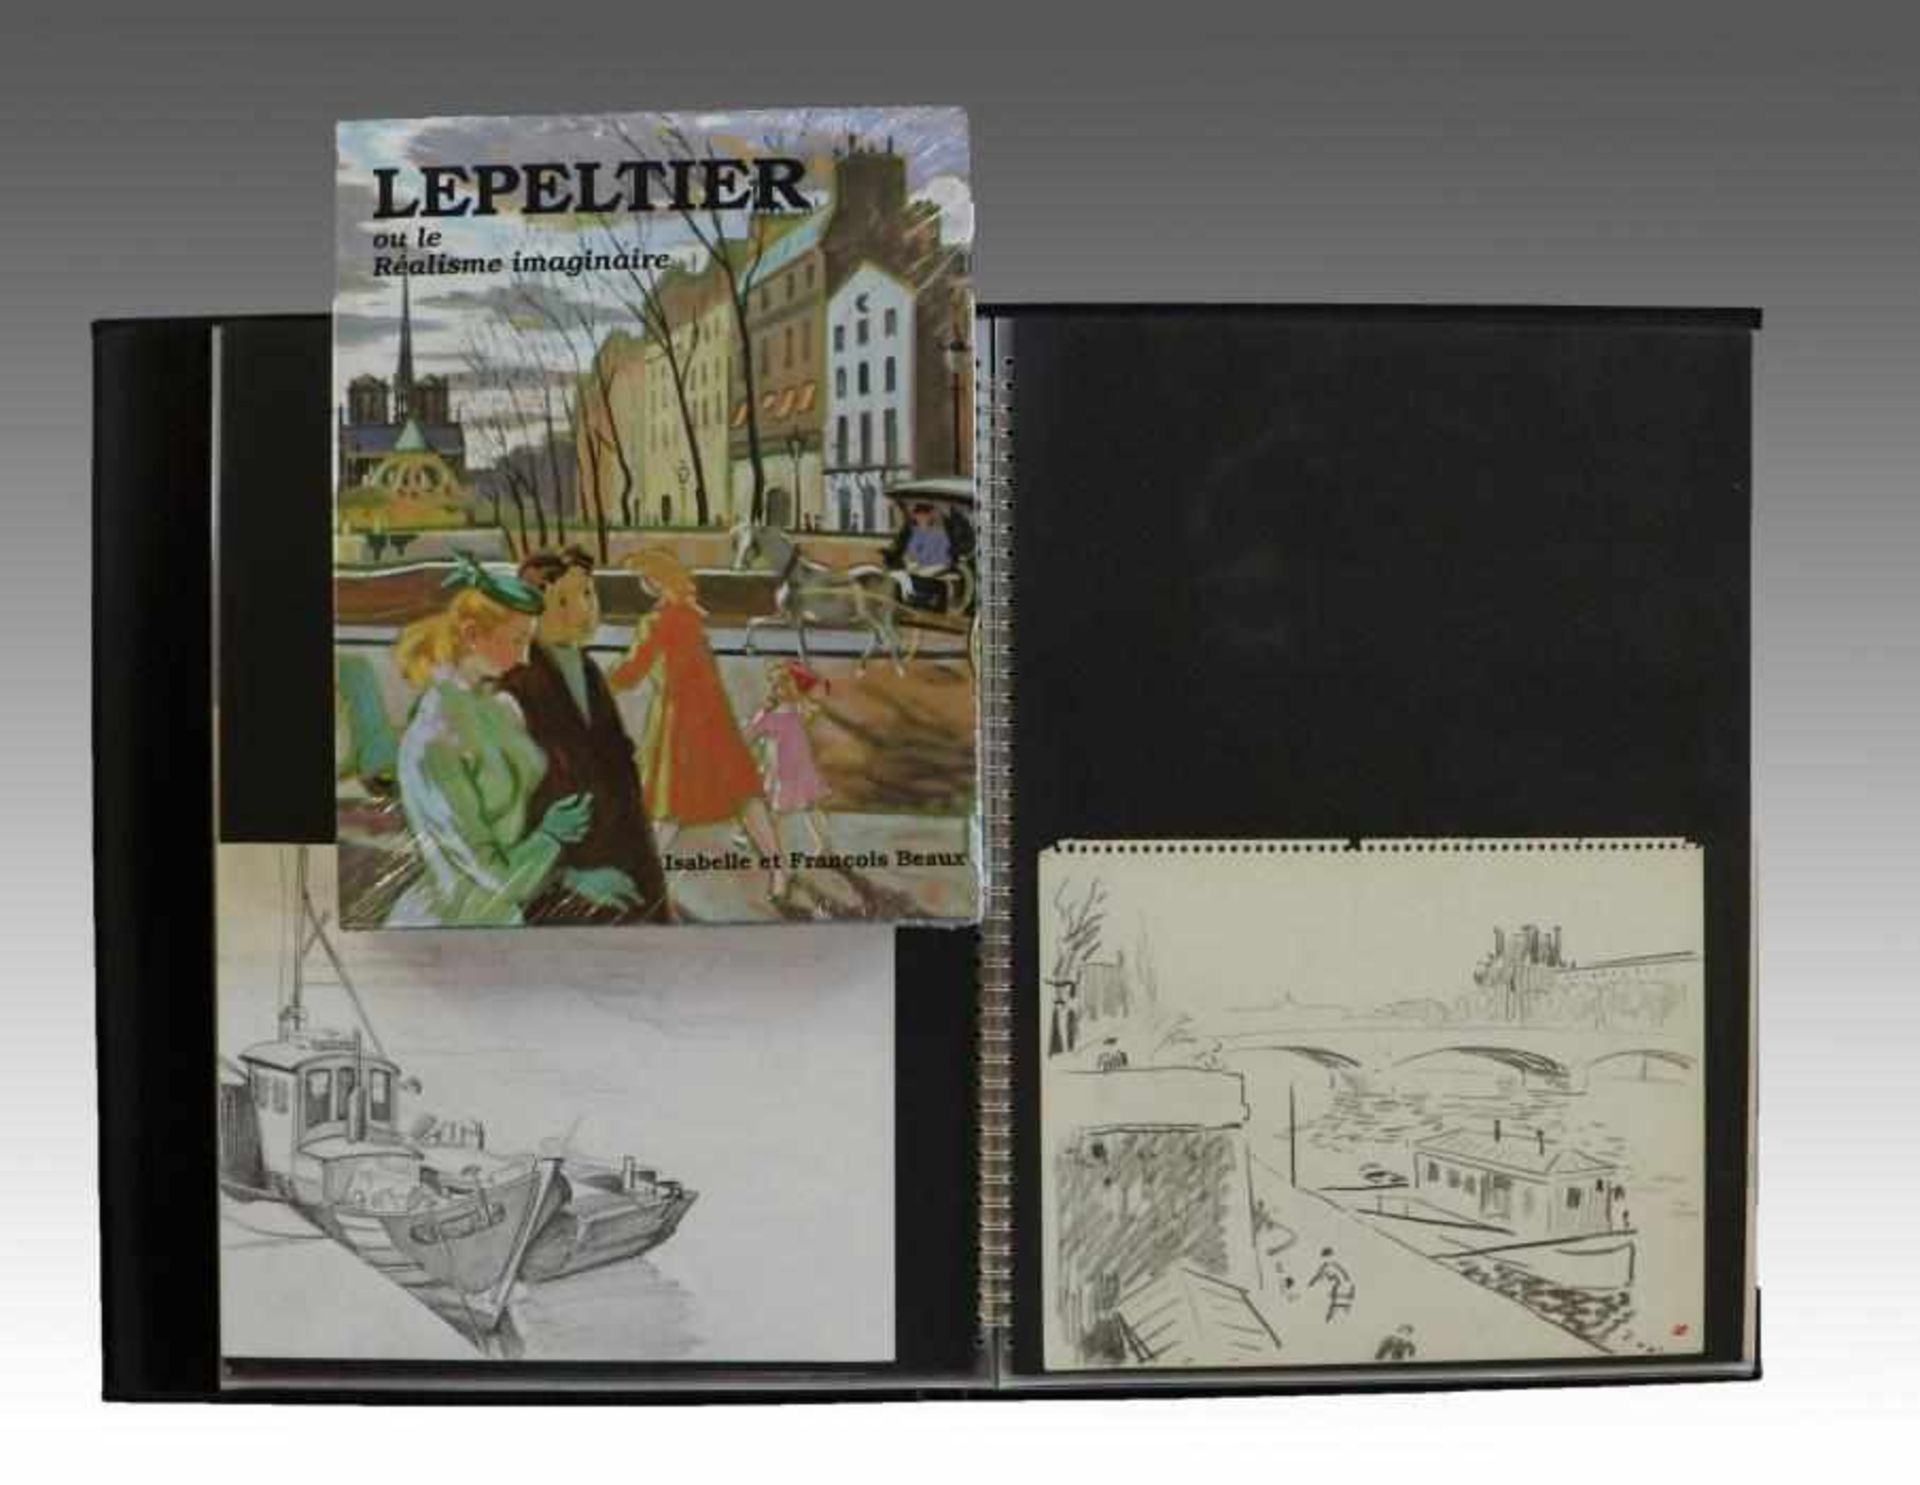 Lepeltier, Robert1913 Paris - 1996, Mappe m. 31 Zeichnungen/Mischtechniken/Lithos., Bleistift,